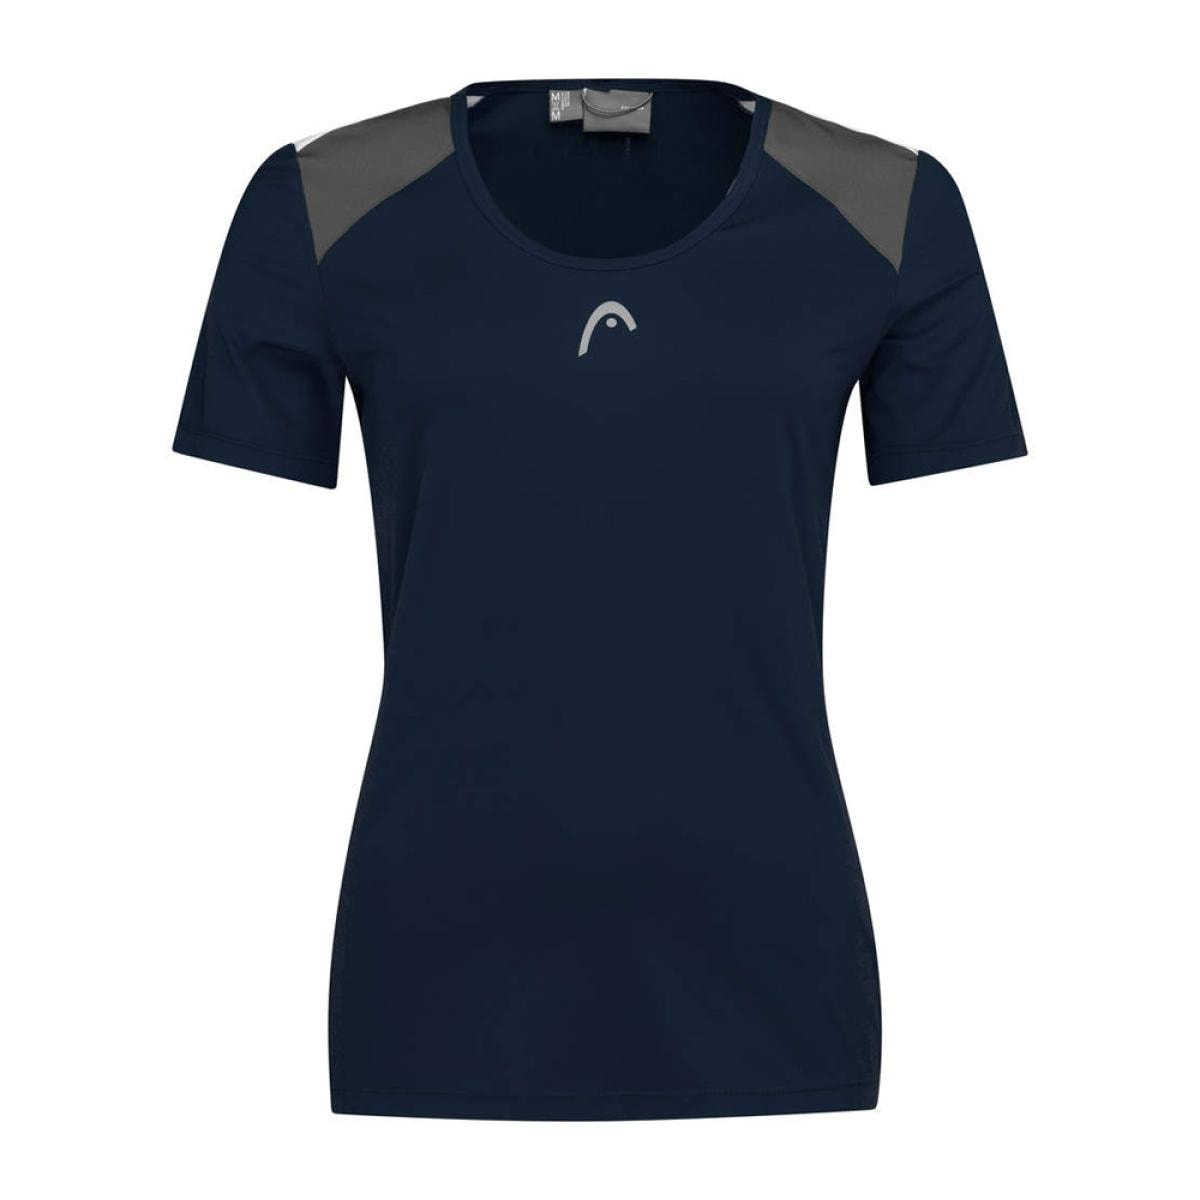 Head Tech Camiseta de Padel Mujer - Grey/Electric Blue